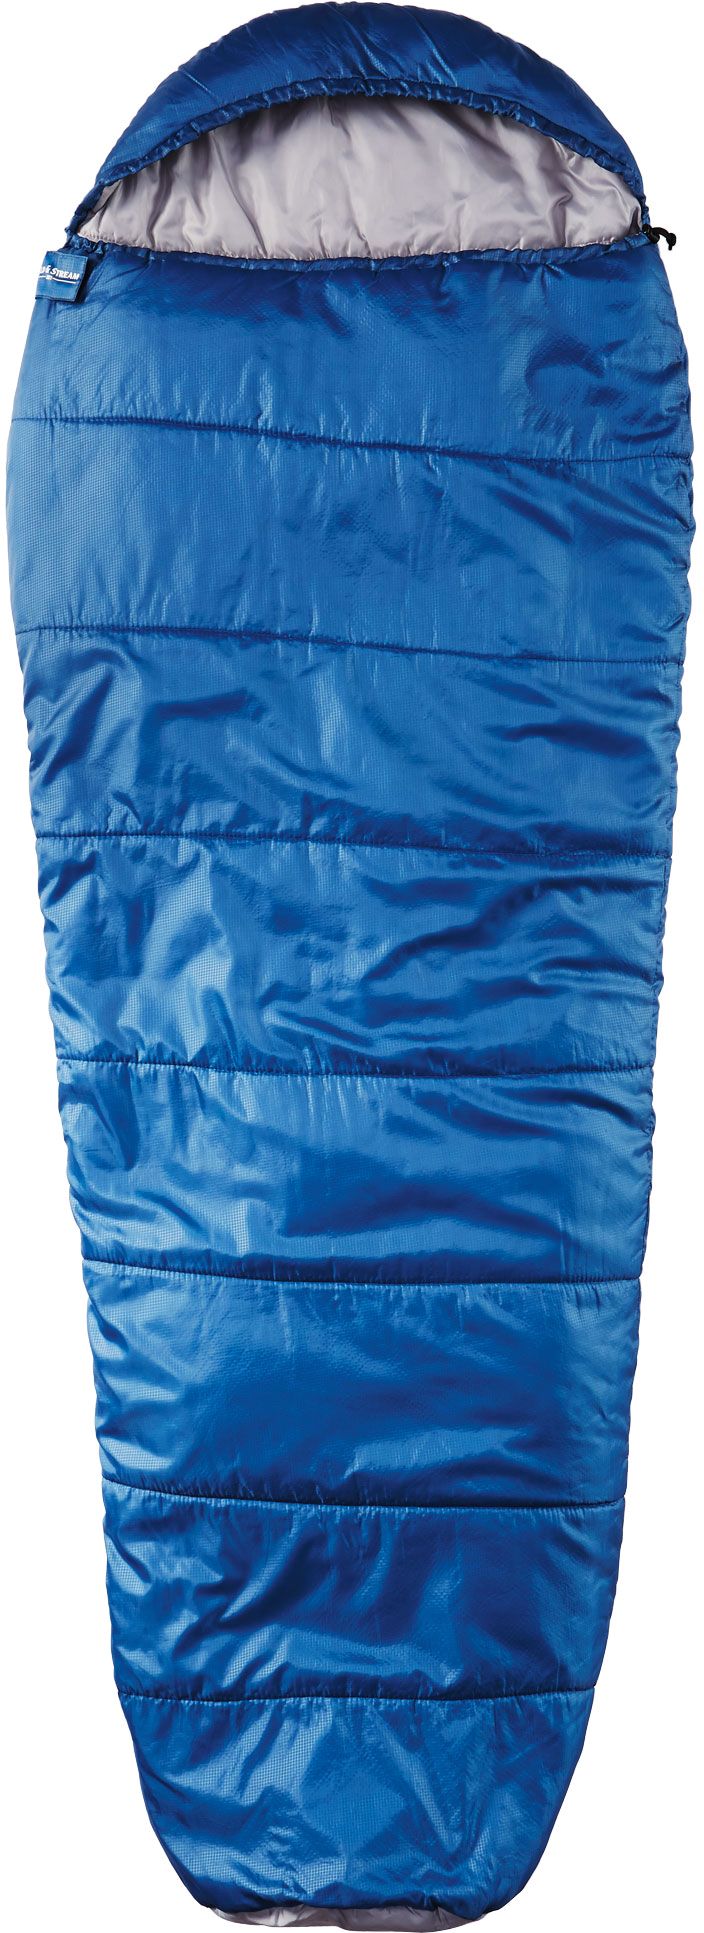 sleeping bag sleeping bag